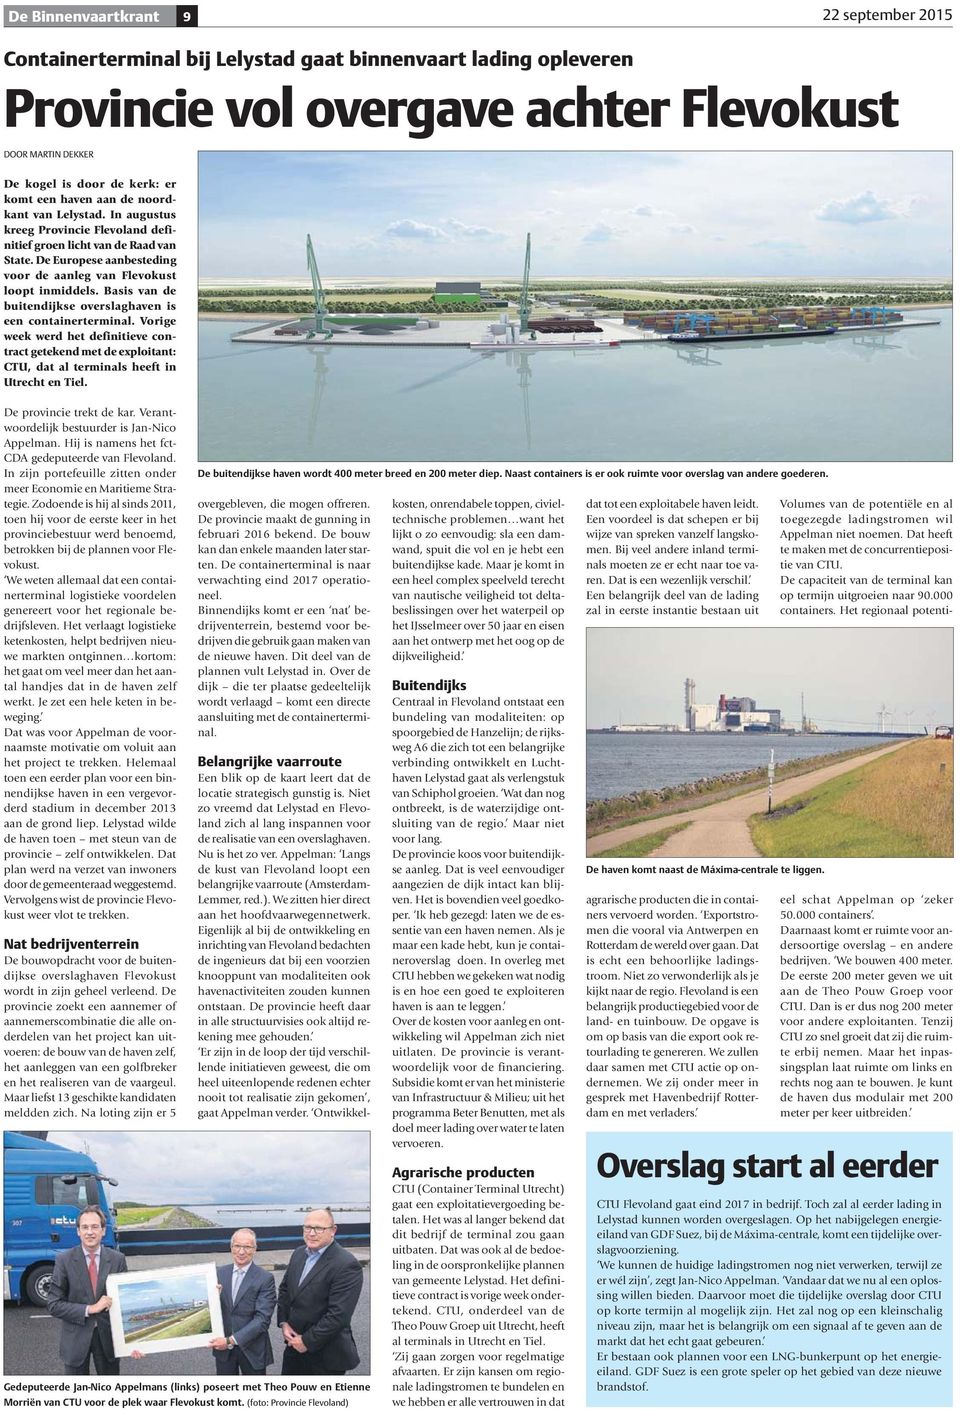 Basis van de buitendijkse overslaghaven is een containerterminal. Vorige week werd het definitieve contract getekend met de exploitant: CTU, dat al terminals heeft in Utrecht en Tiel.